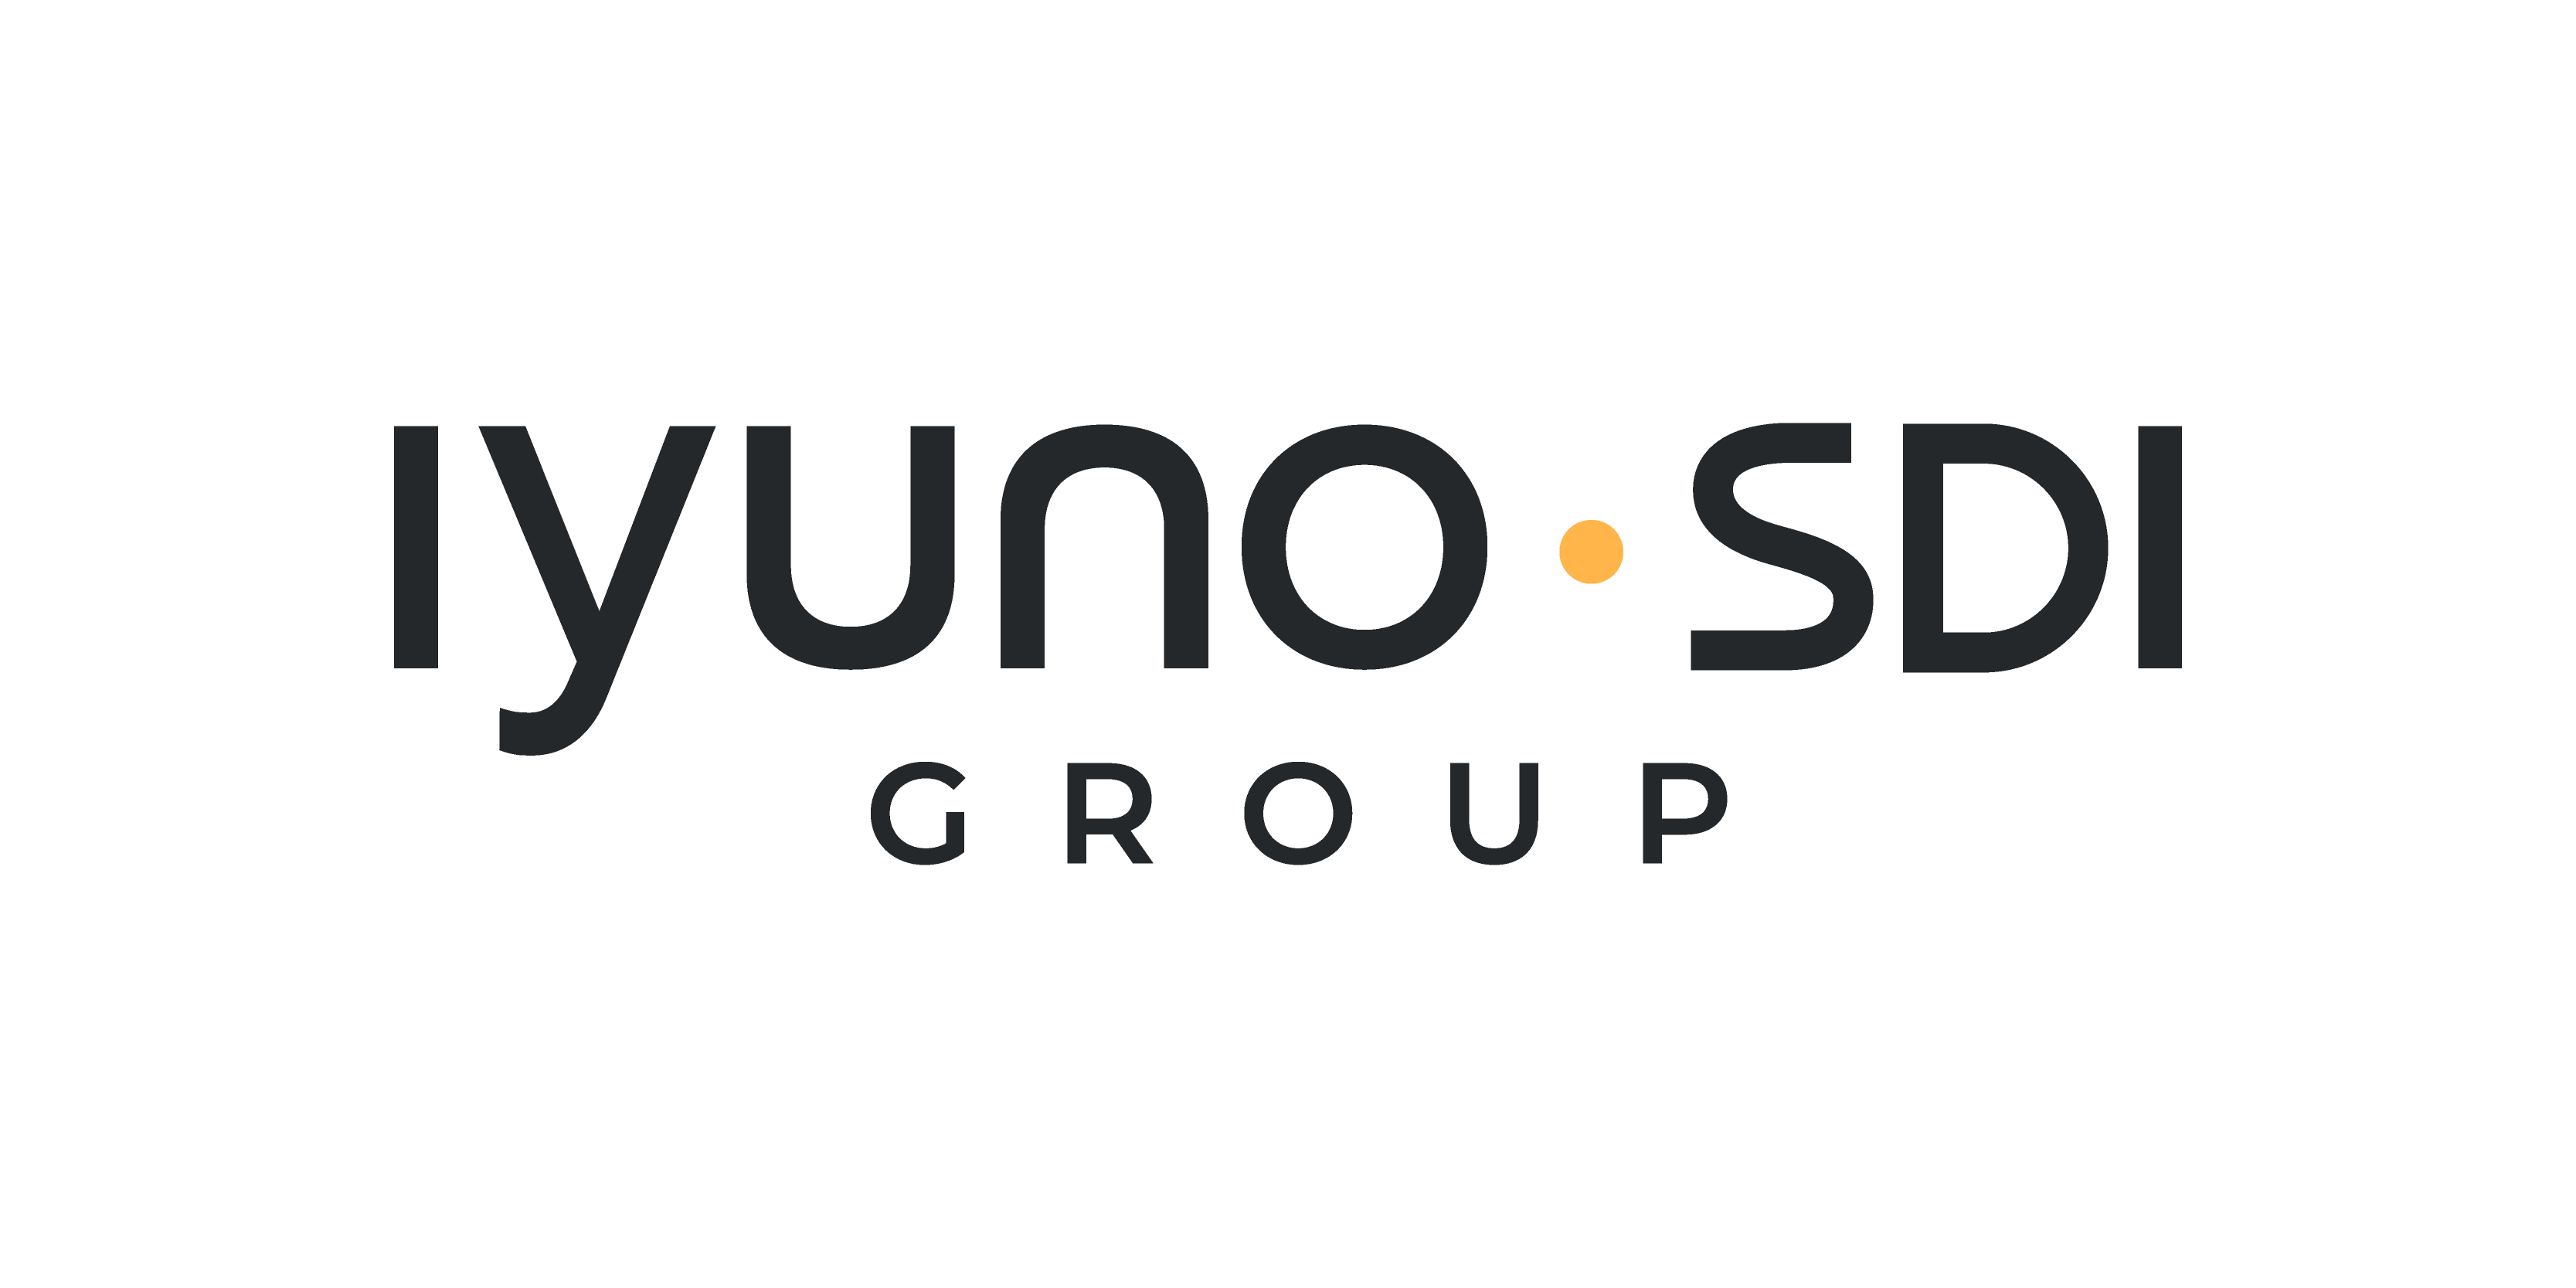 Receptionist sökes till Iyuno-SDI Group!